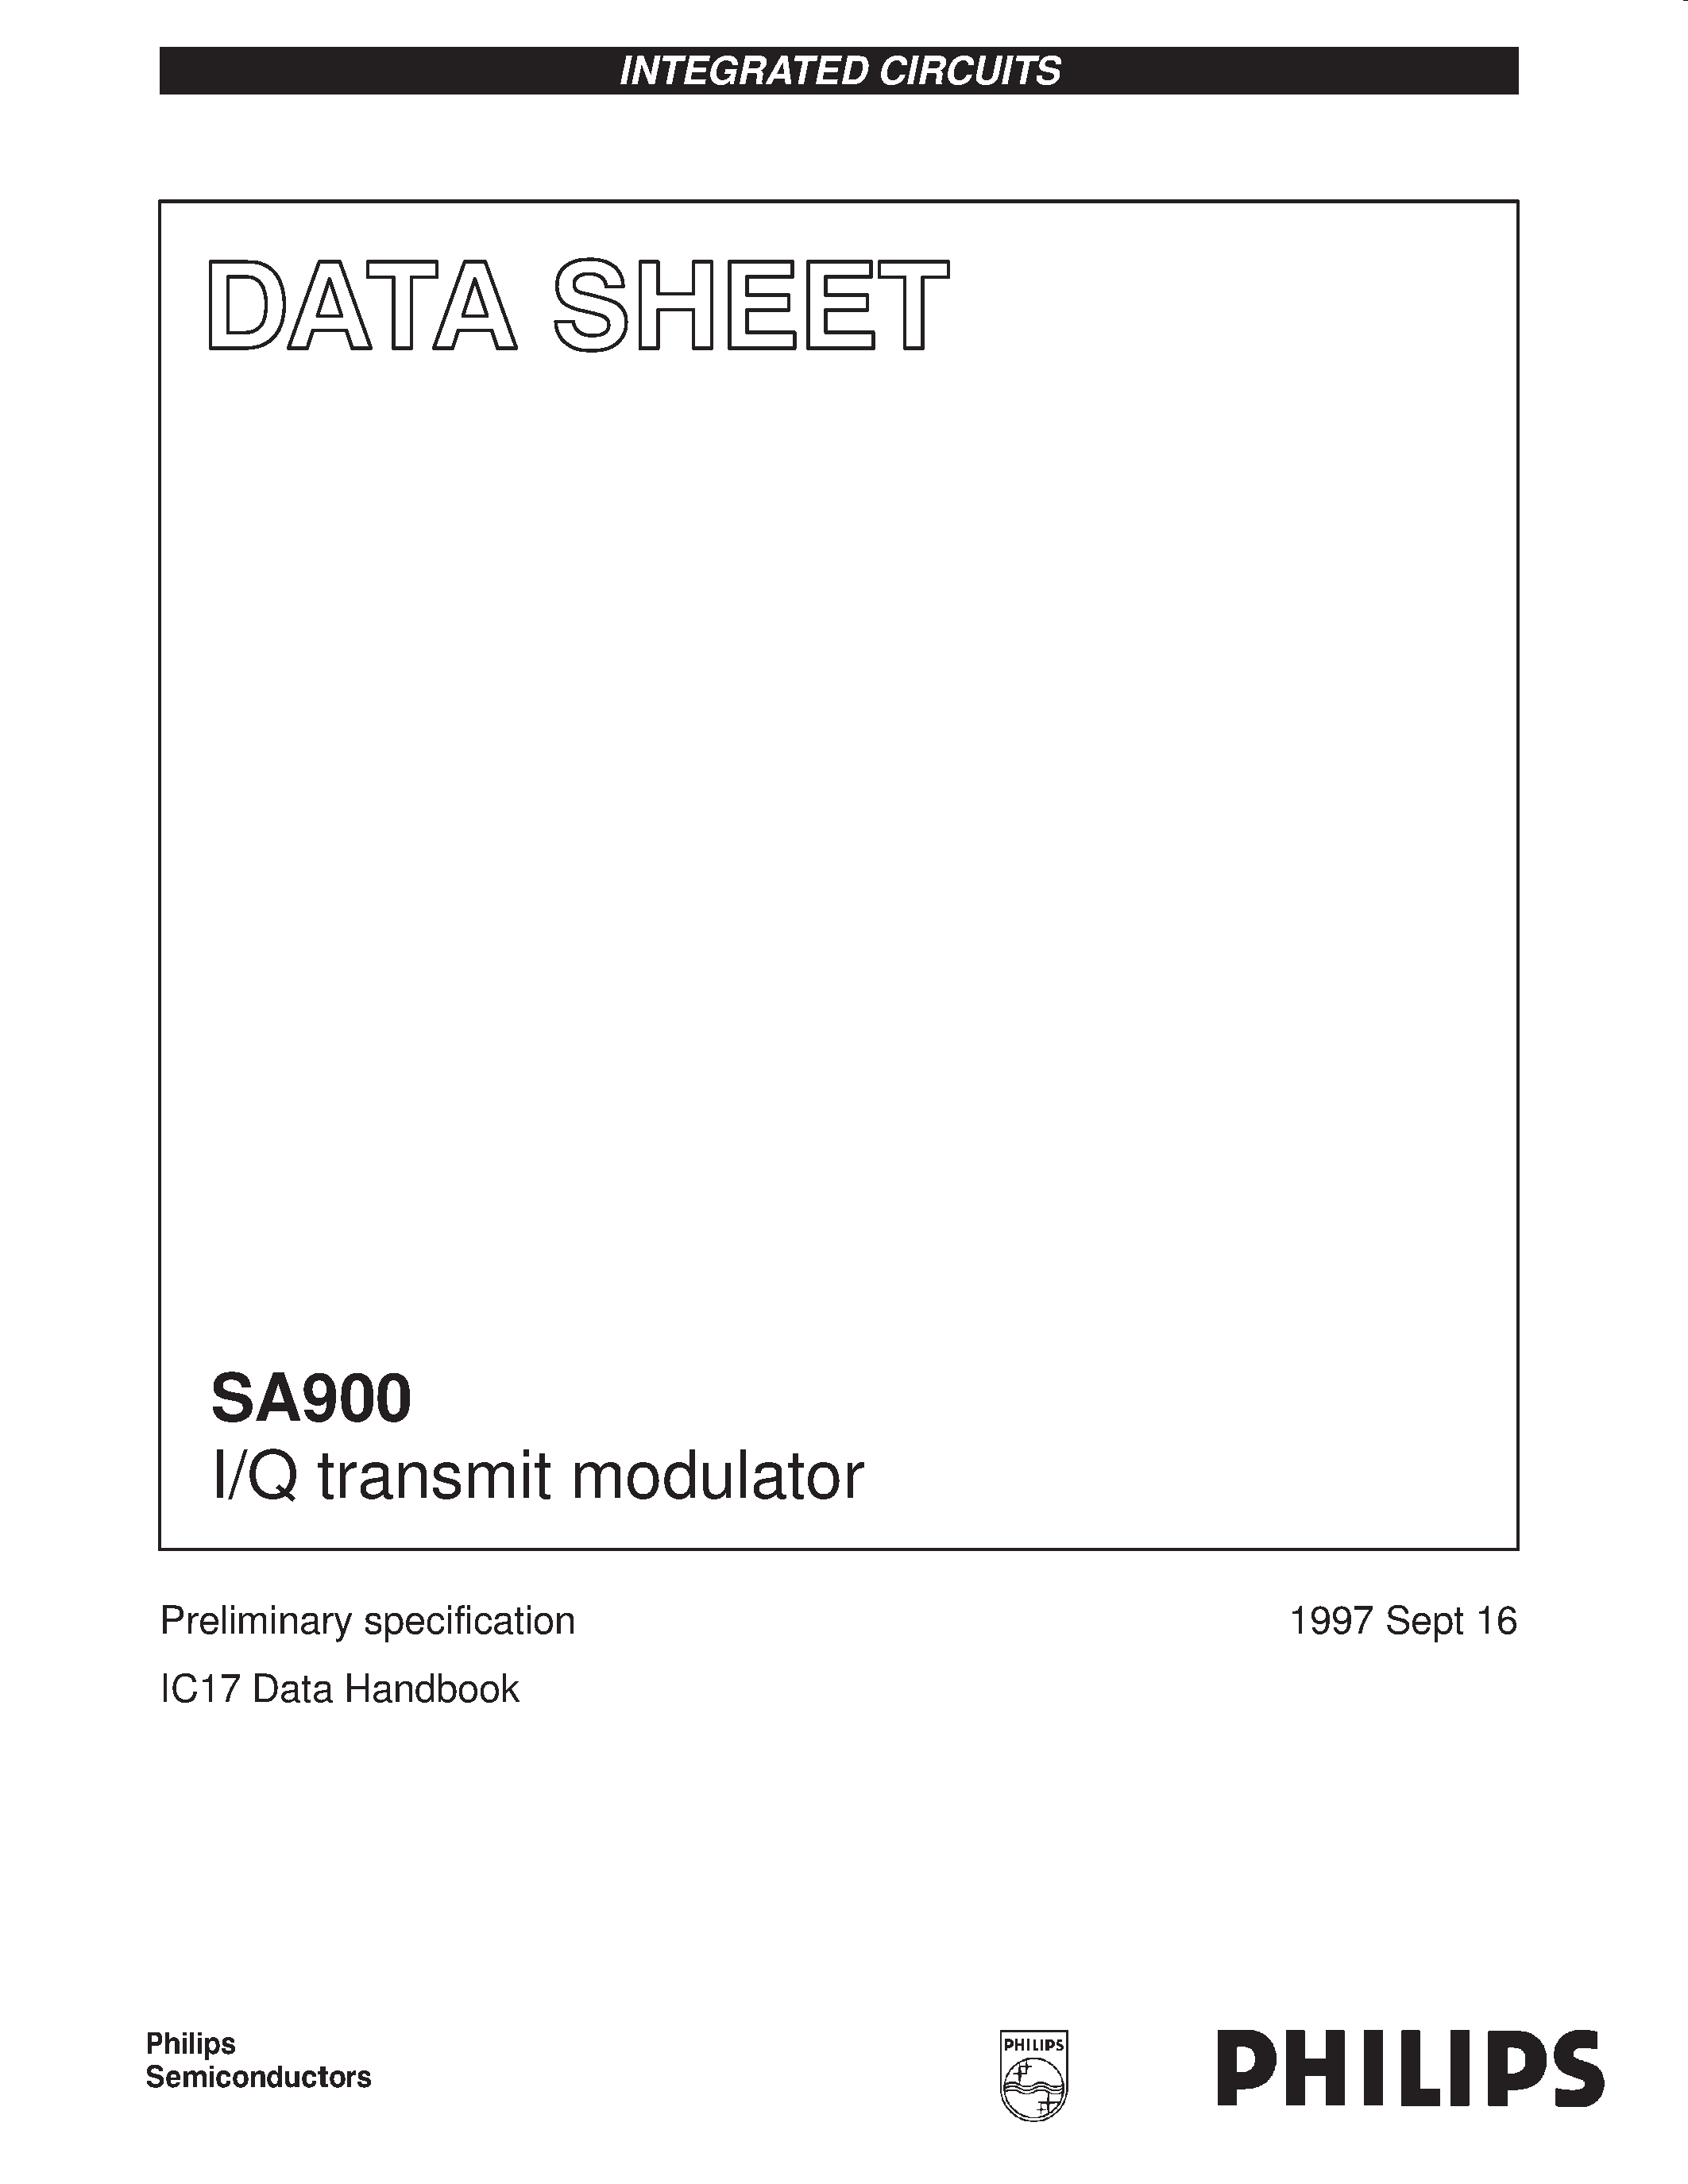 Даташит SA900 - I/Q transmit modulator страница 1